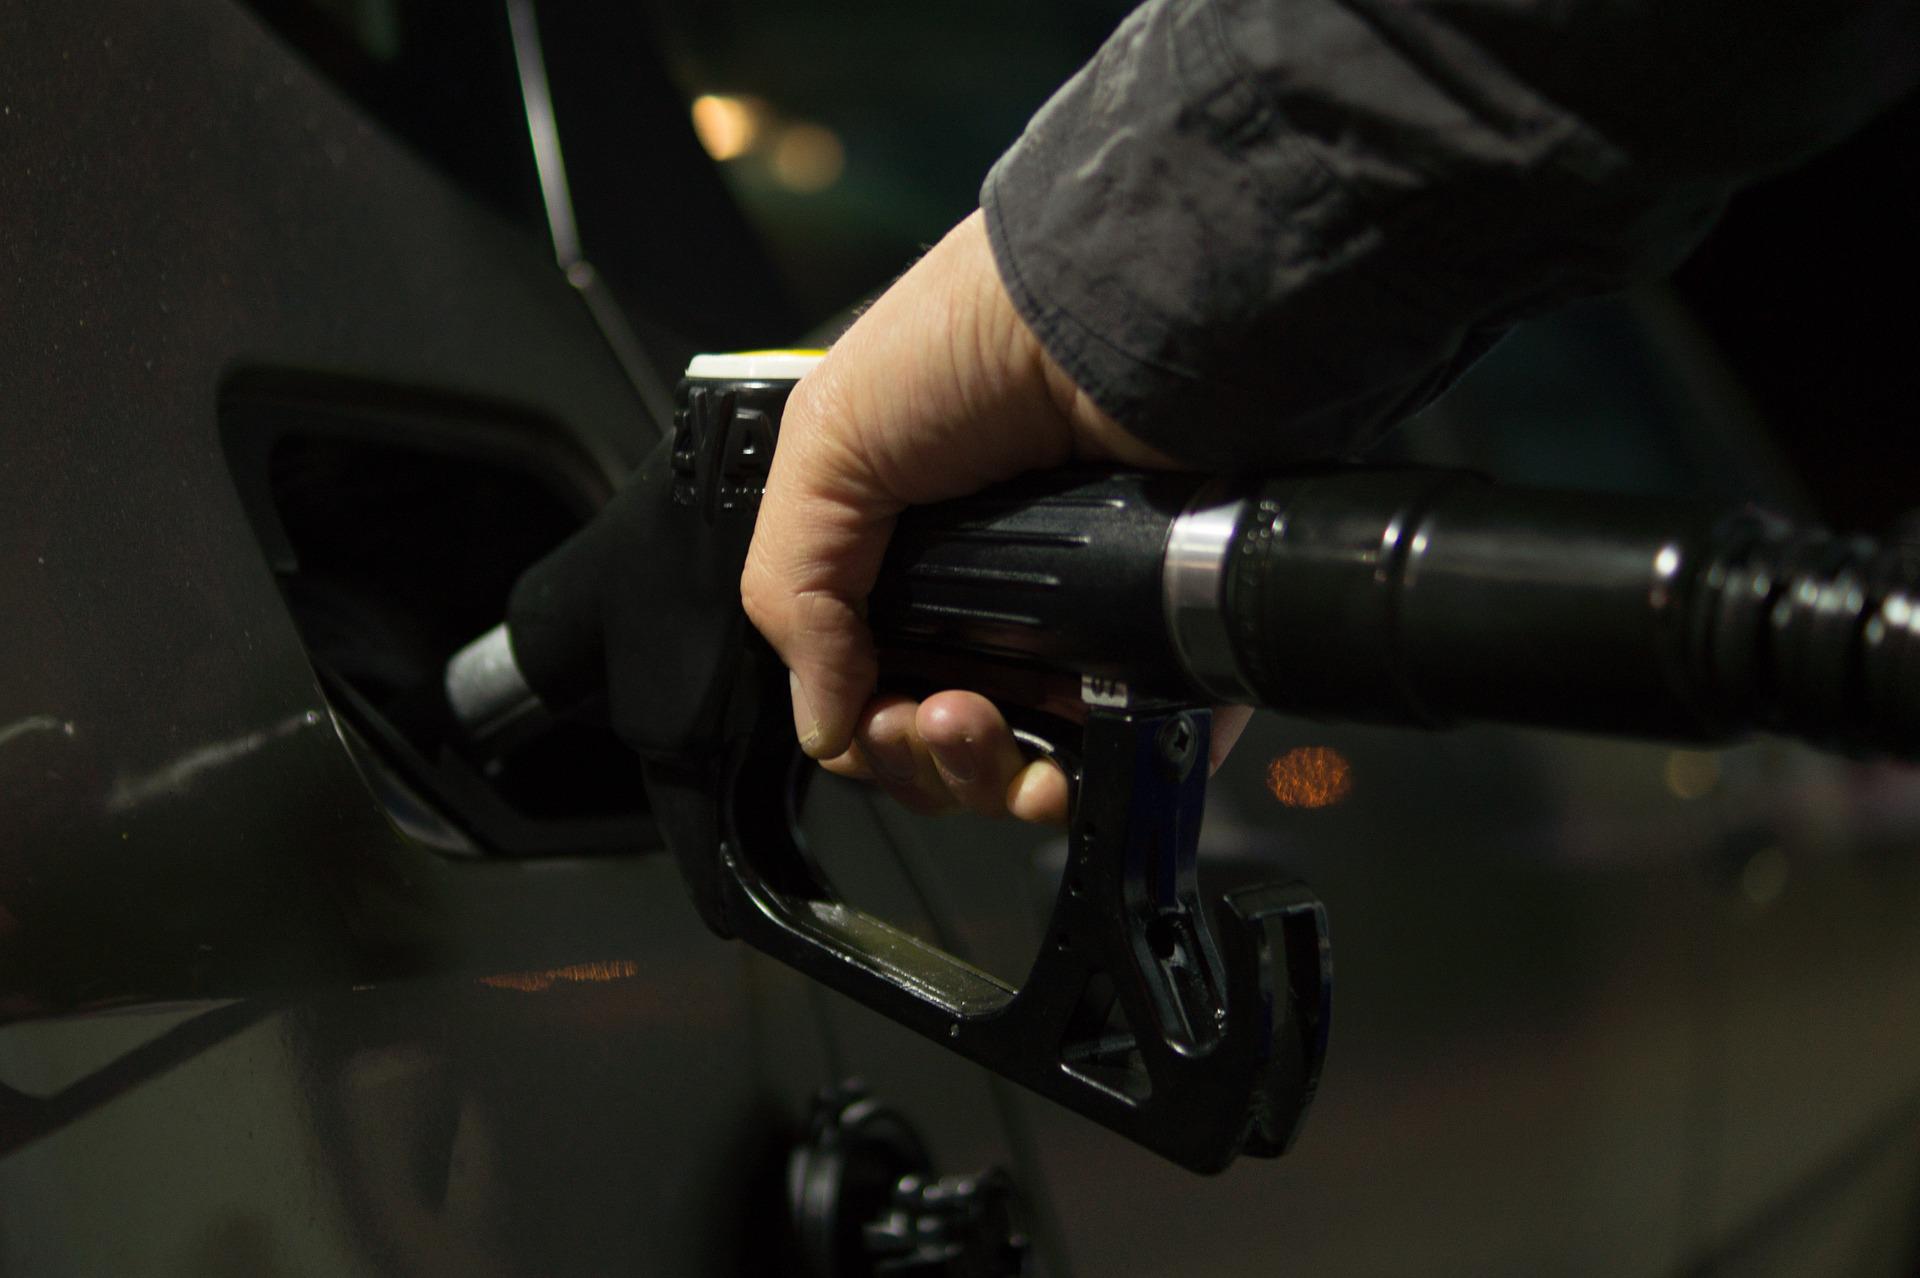 Kraftstoff sparen: Alle Spartipps & effiziente Reifen im Überblick